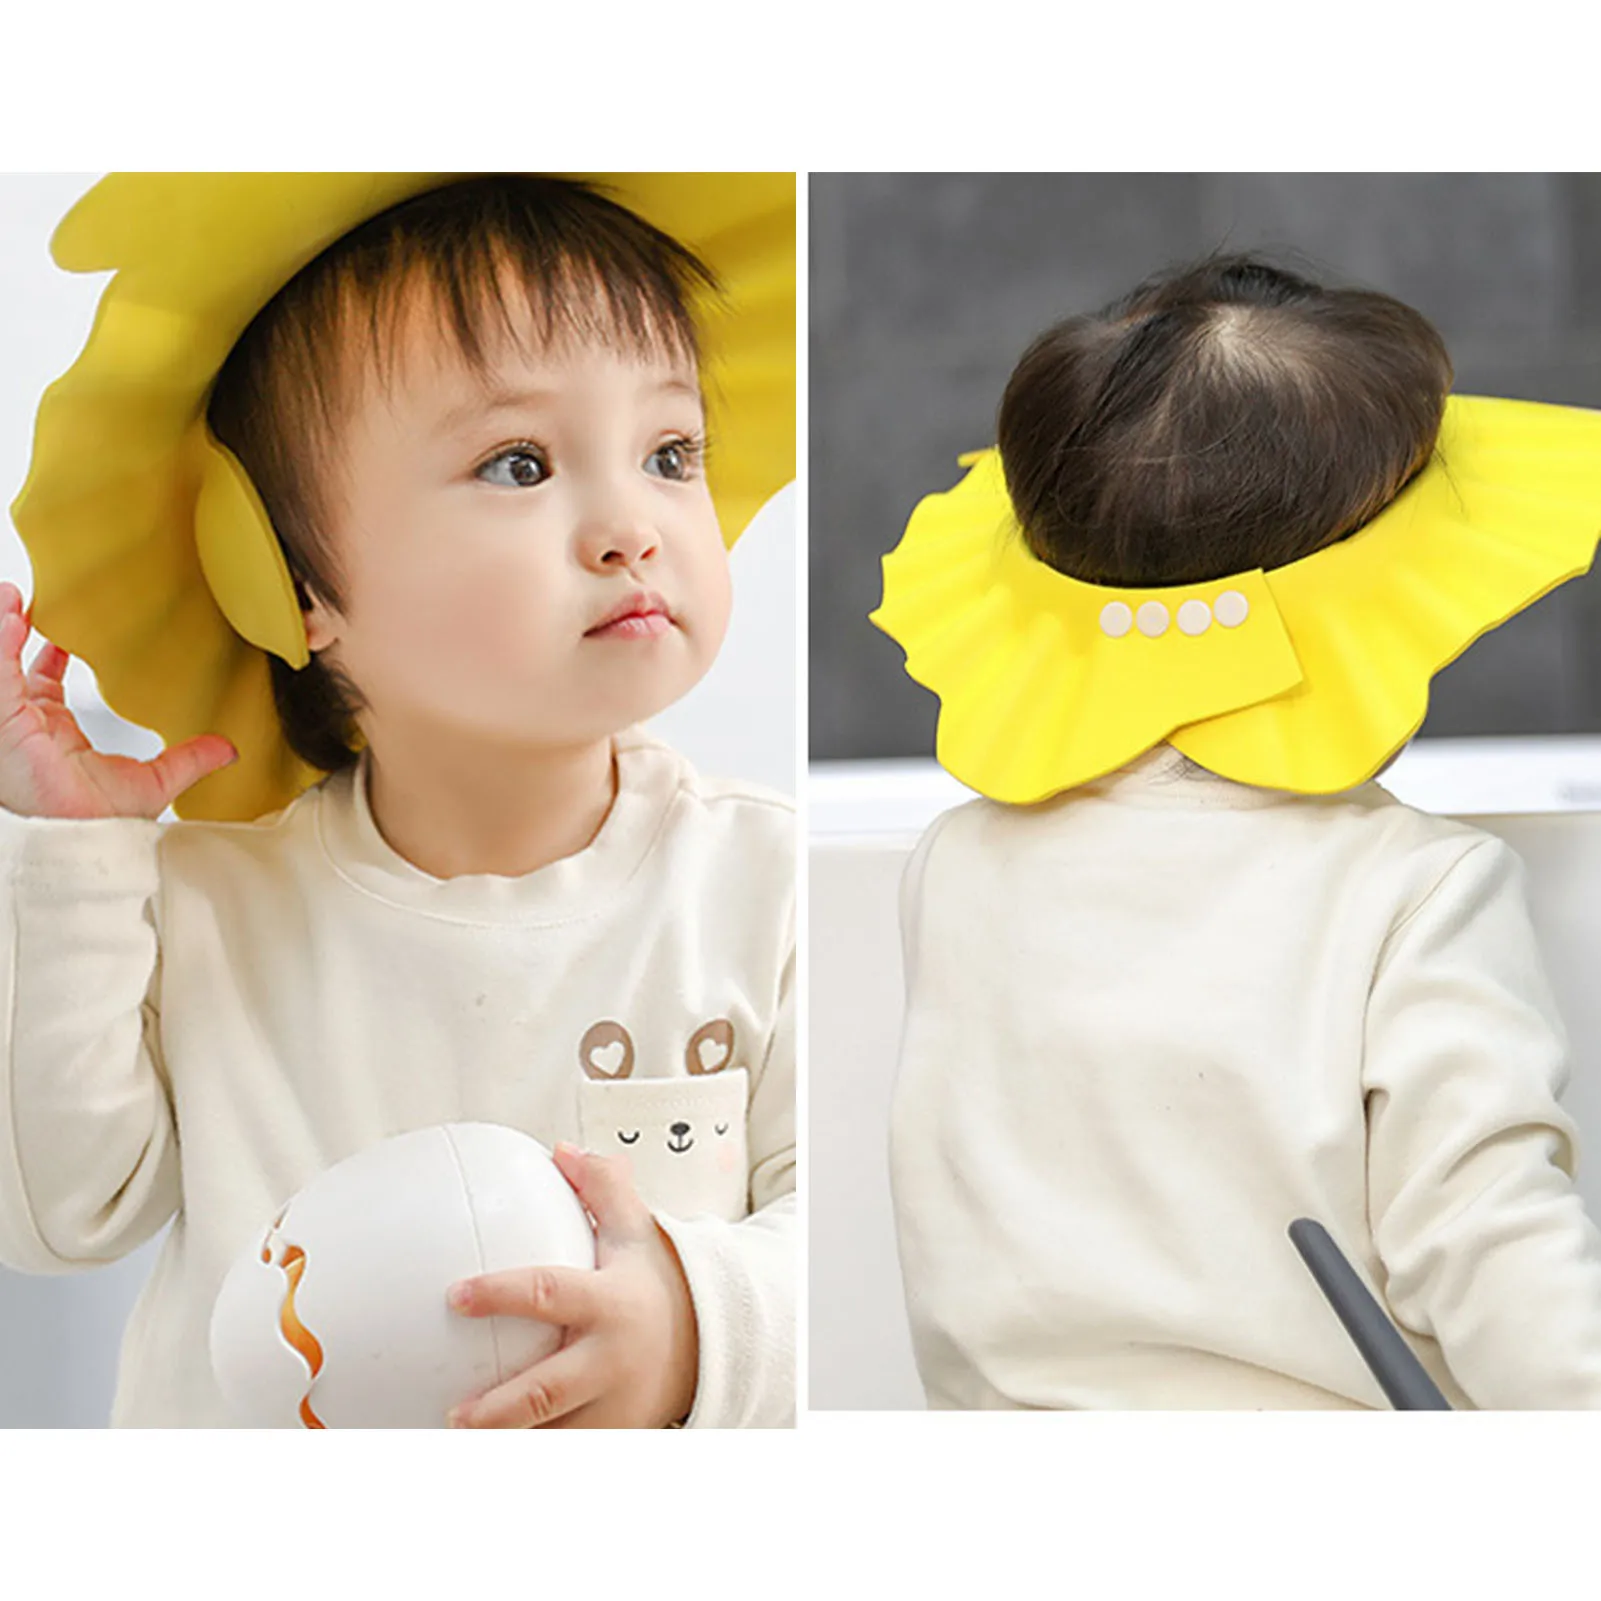 Bonnet de douche réglable pour bébé, protection des oreilles, sûr pour les enfants, protège la tête pendant le shampooing et le bain.